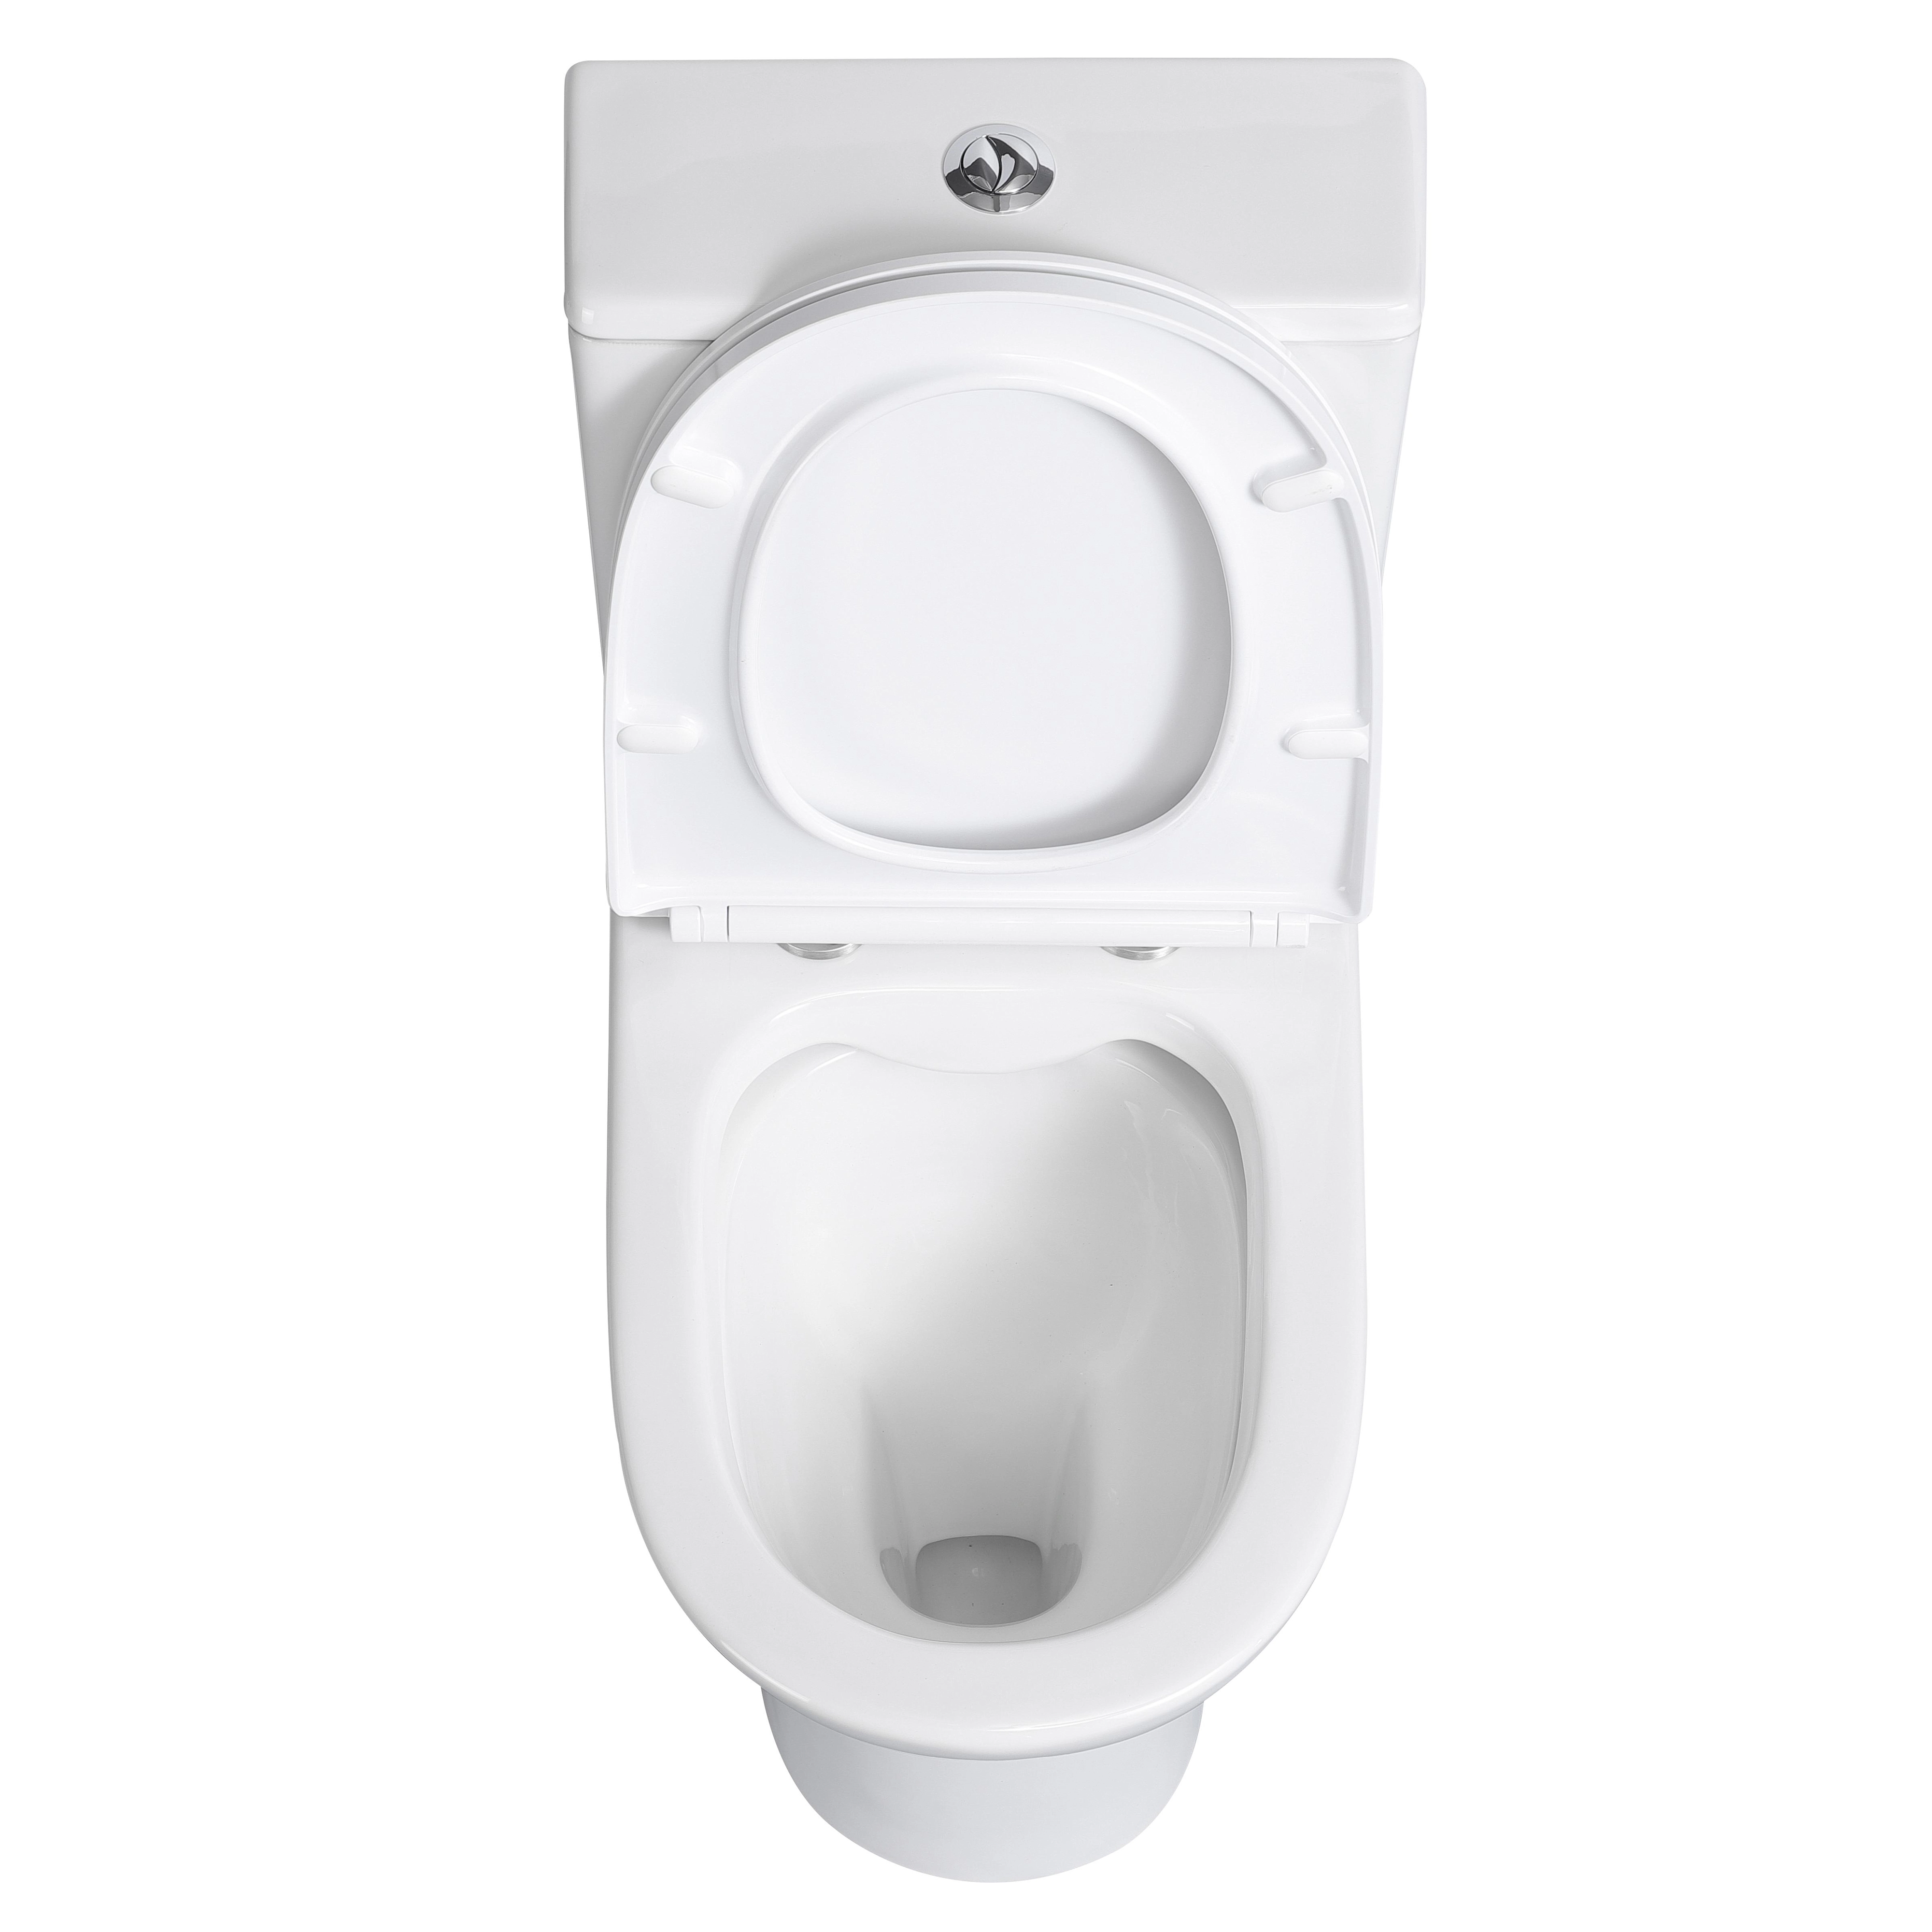 Stand-WC-Set spülrandlos inkl. WC-Sitz Spülkasten OBI Paros Weiß und Verosan+ kaufen bei